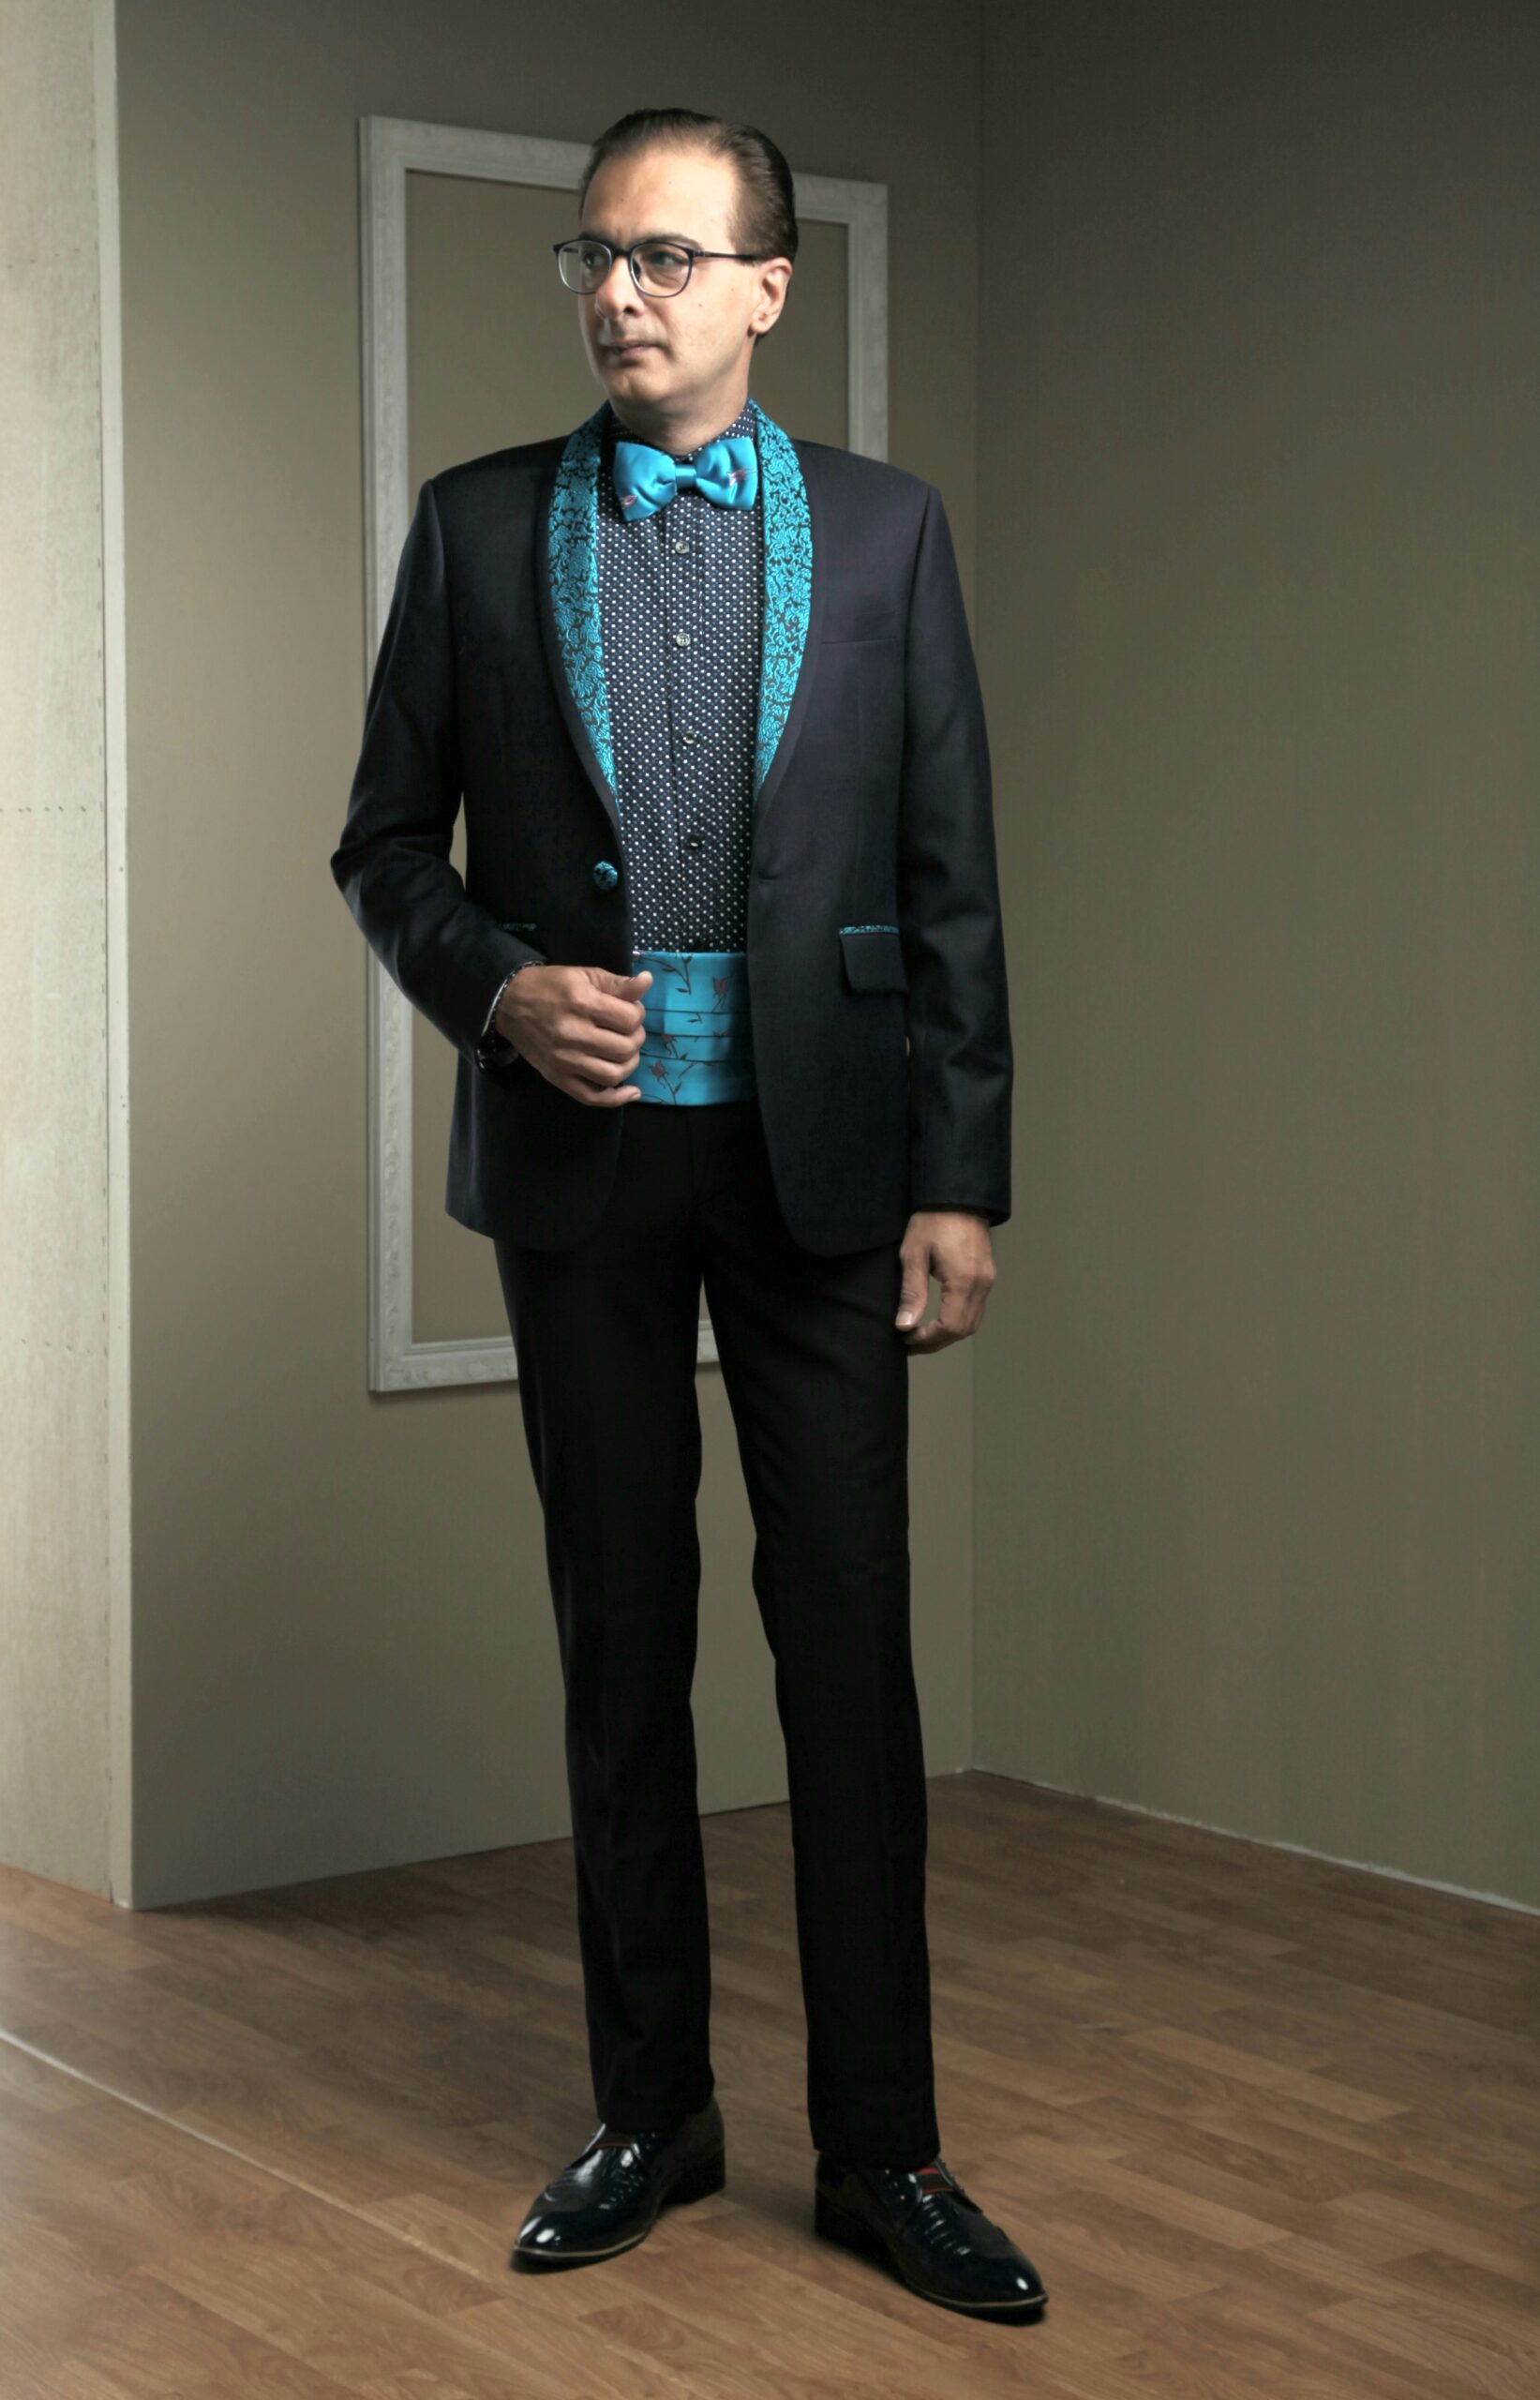 MST-5002-02-rent_rental_hire_tuxedo_suit_black_tie_suit_designer_suits_shop_tailor